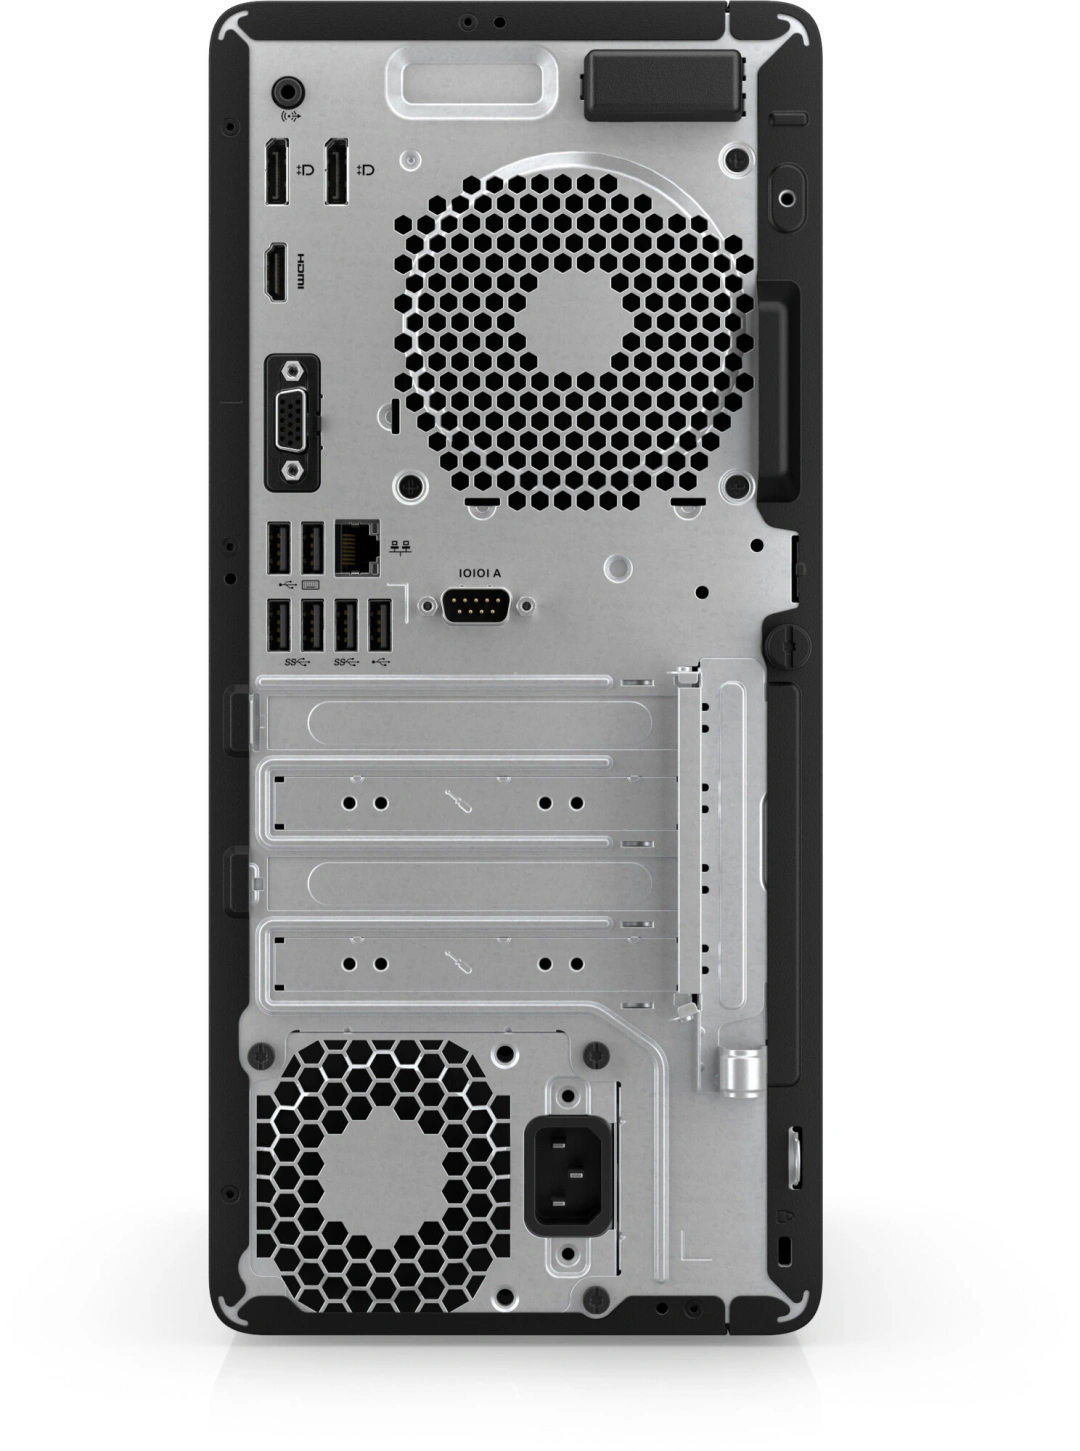 HP Elite Tower 600 G9, black (6U4S9EA)